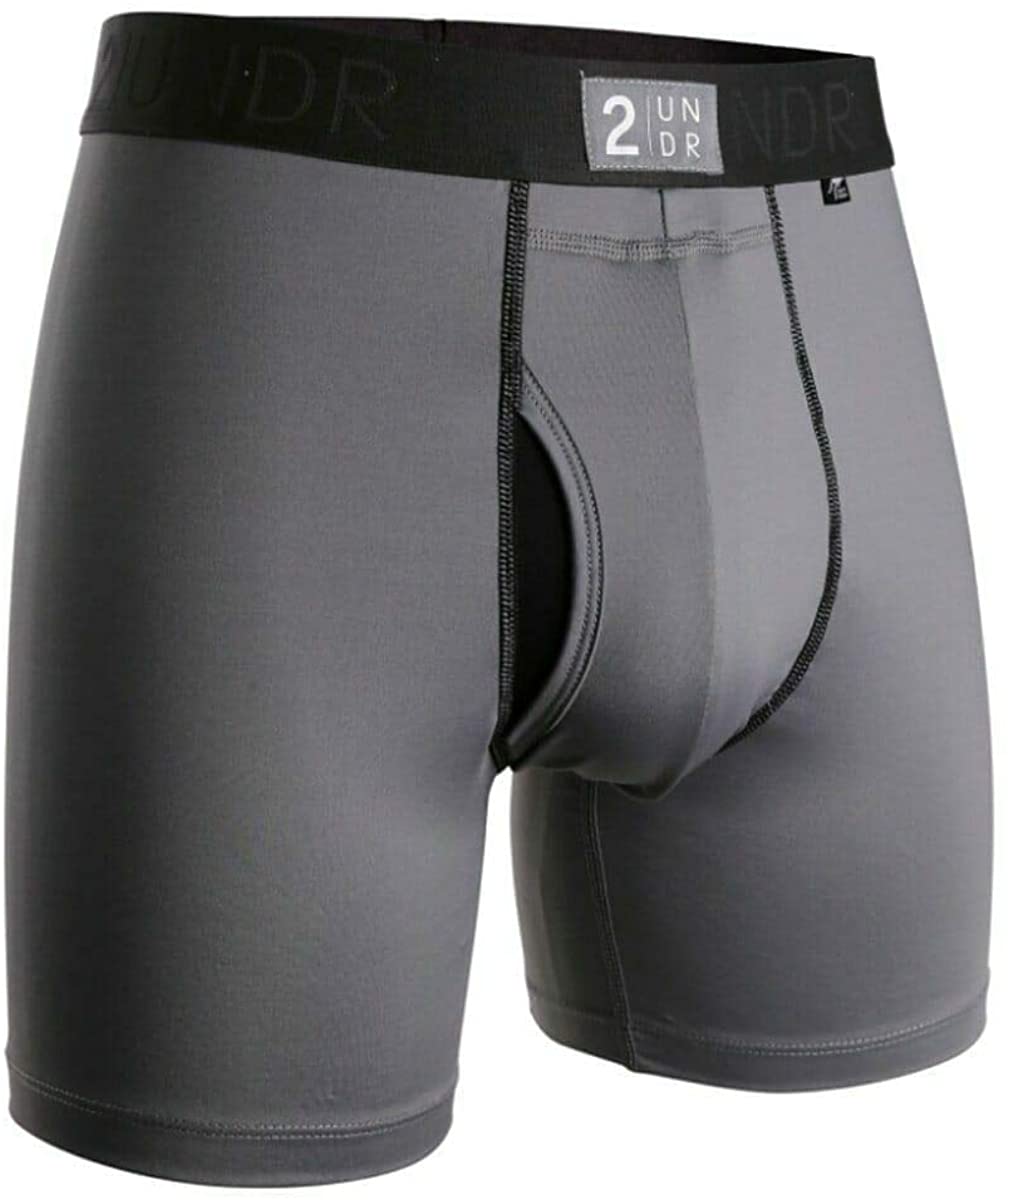 2UNDR Mens Power Shift 6 Boxer Brief Underwear